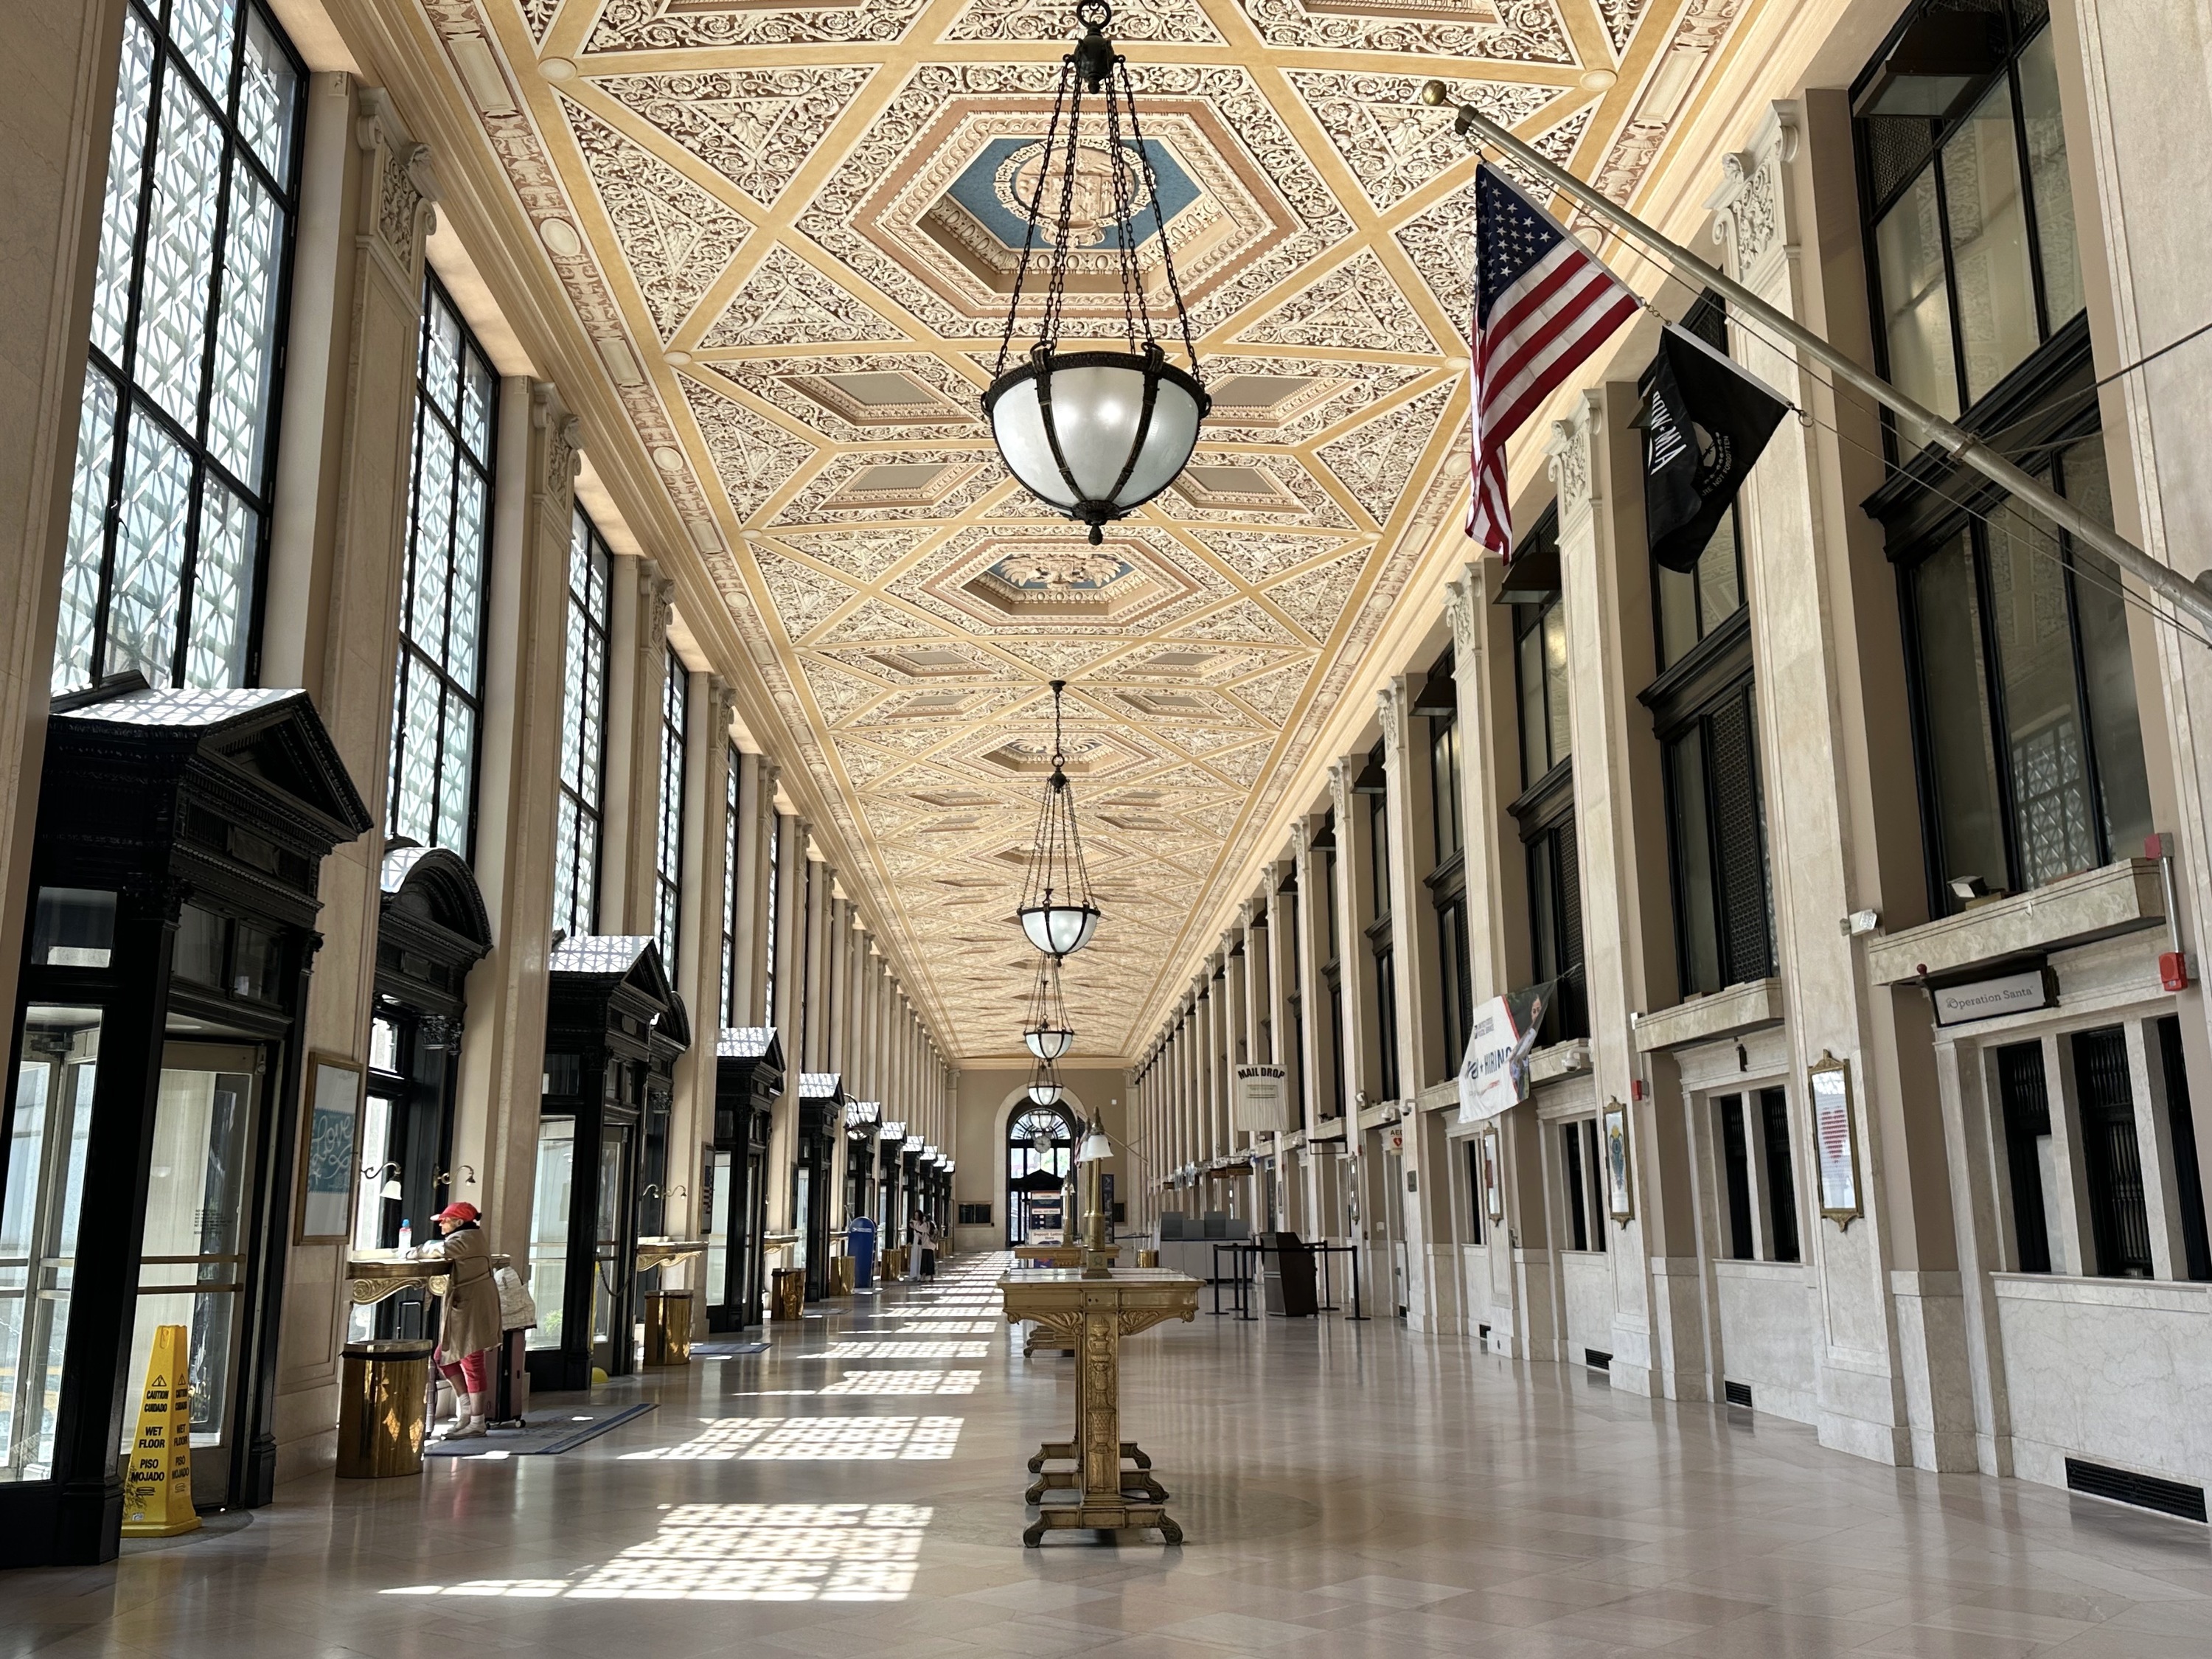 A fancy ceiling in a post office.